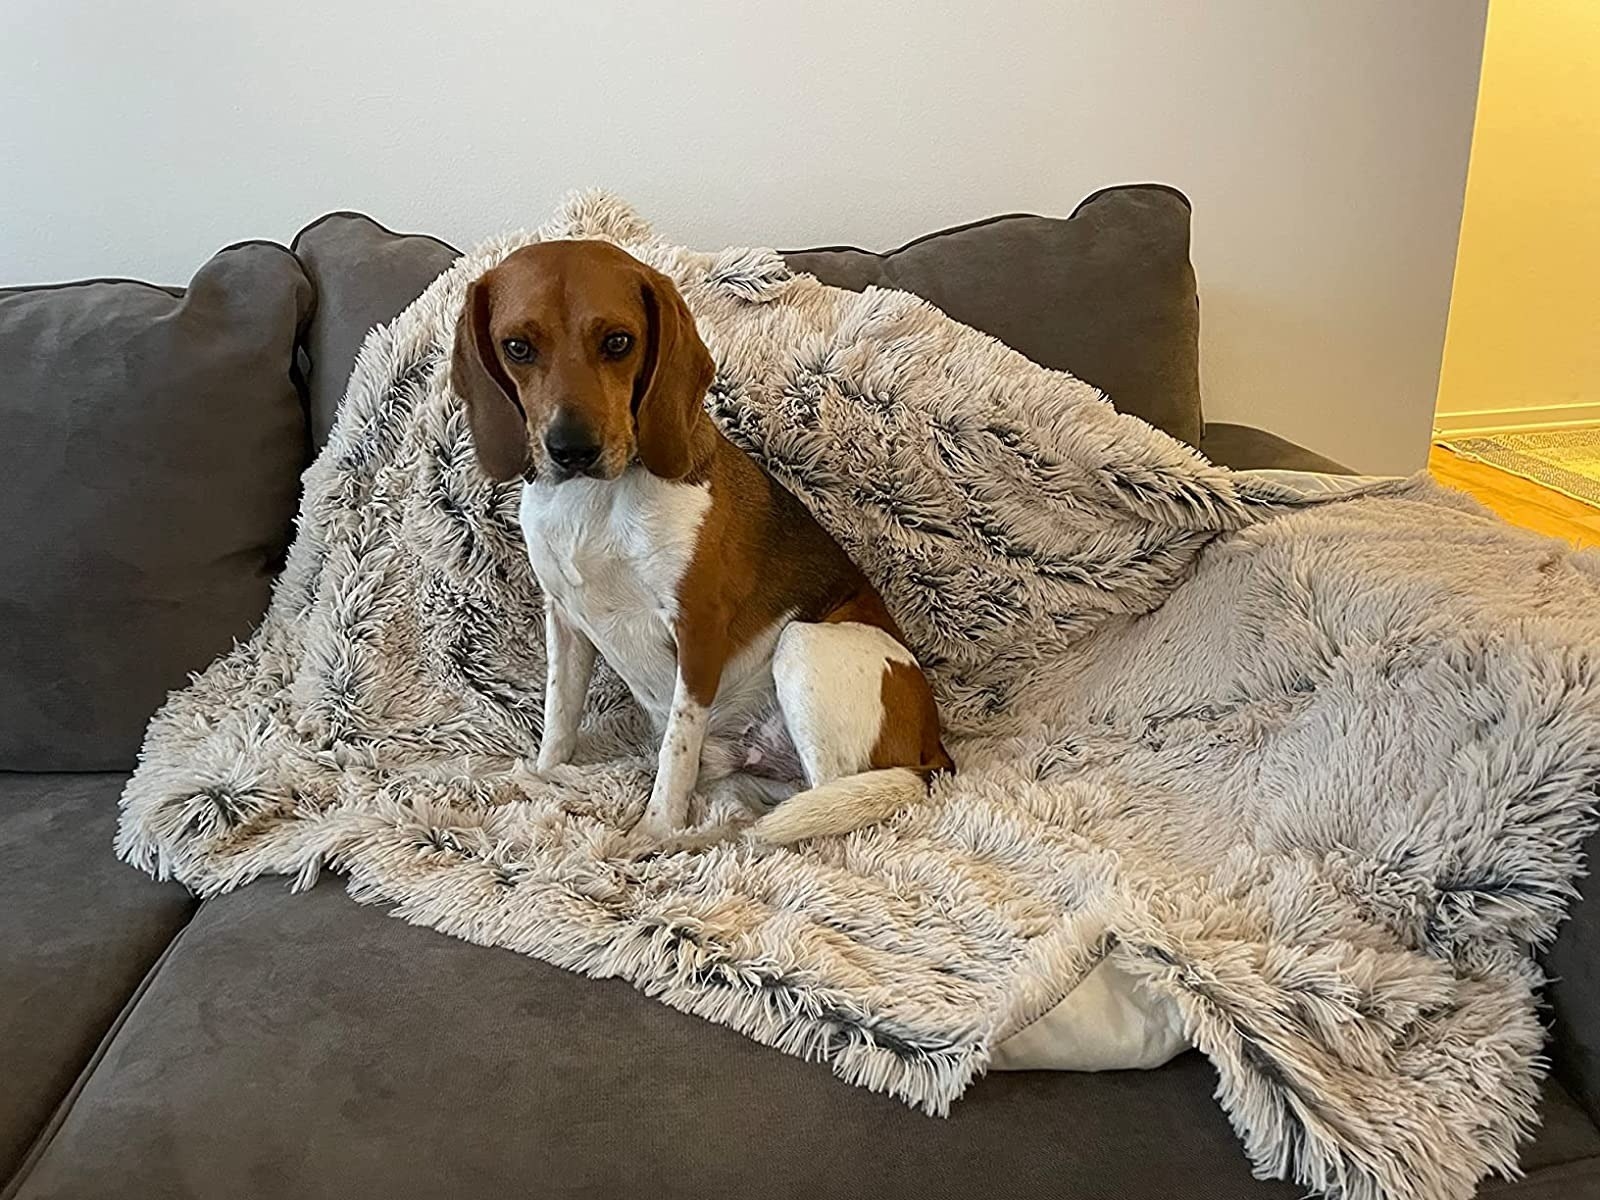 A dog sitting on a blanket